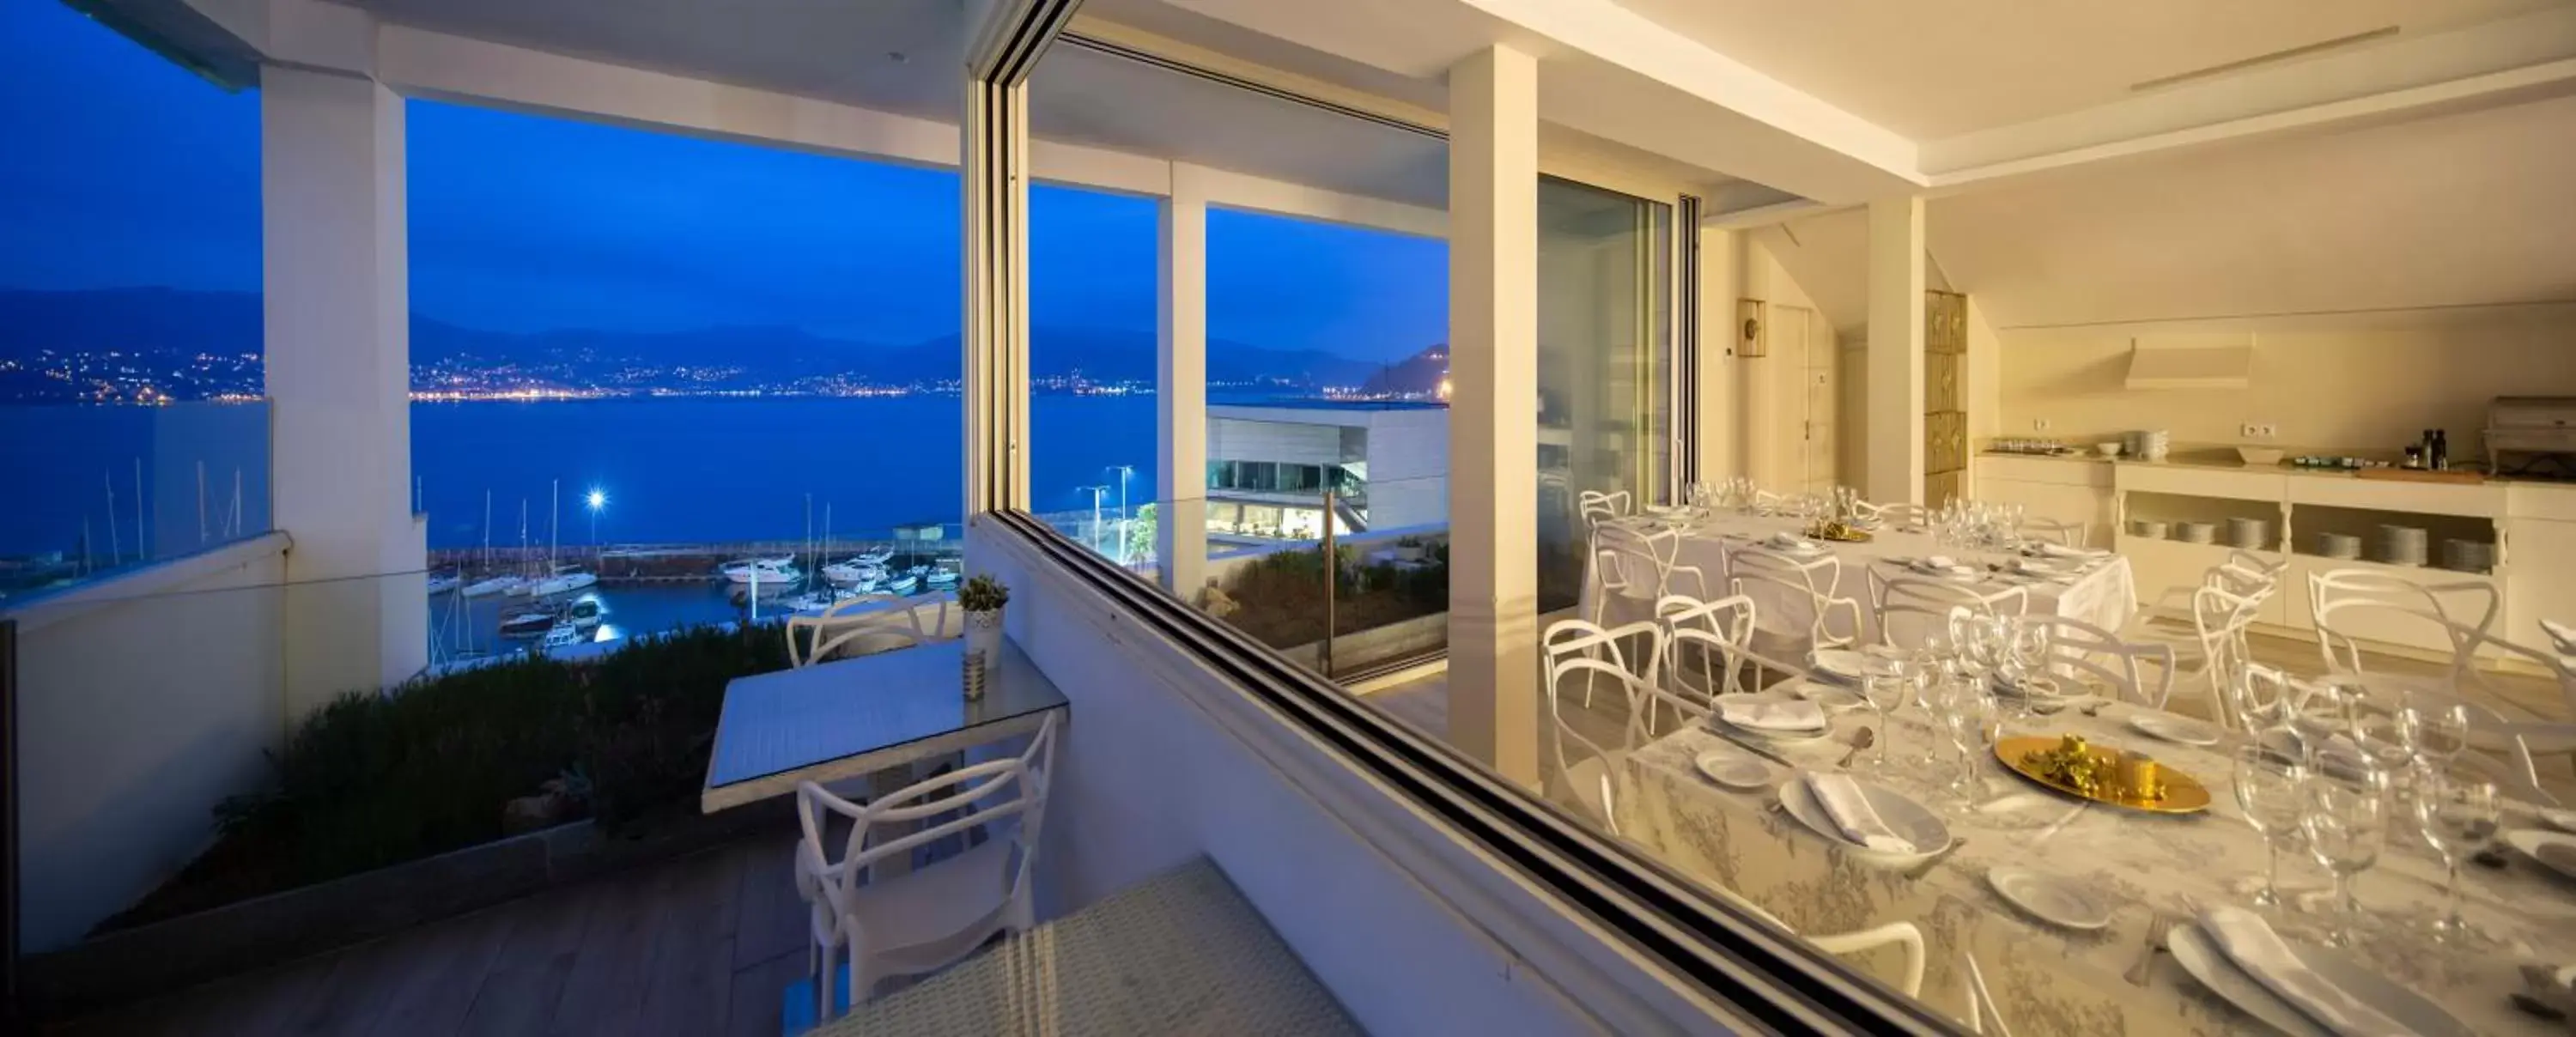 Restaurant/places to eat in Hotel Ciudad de Vigo